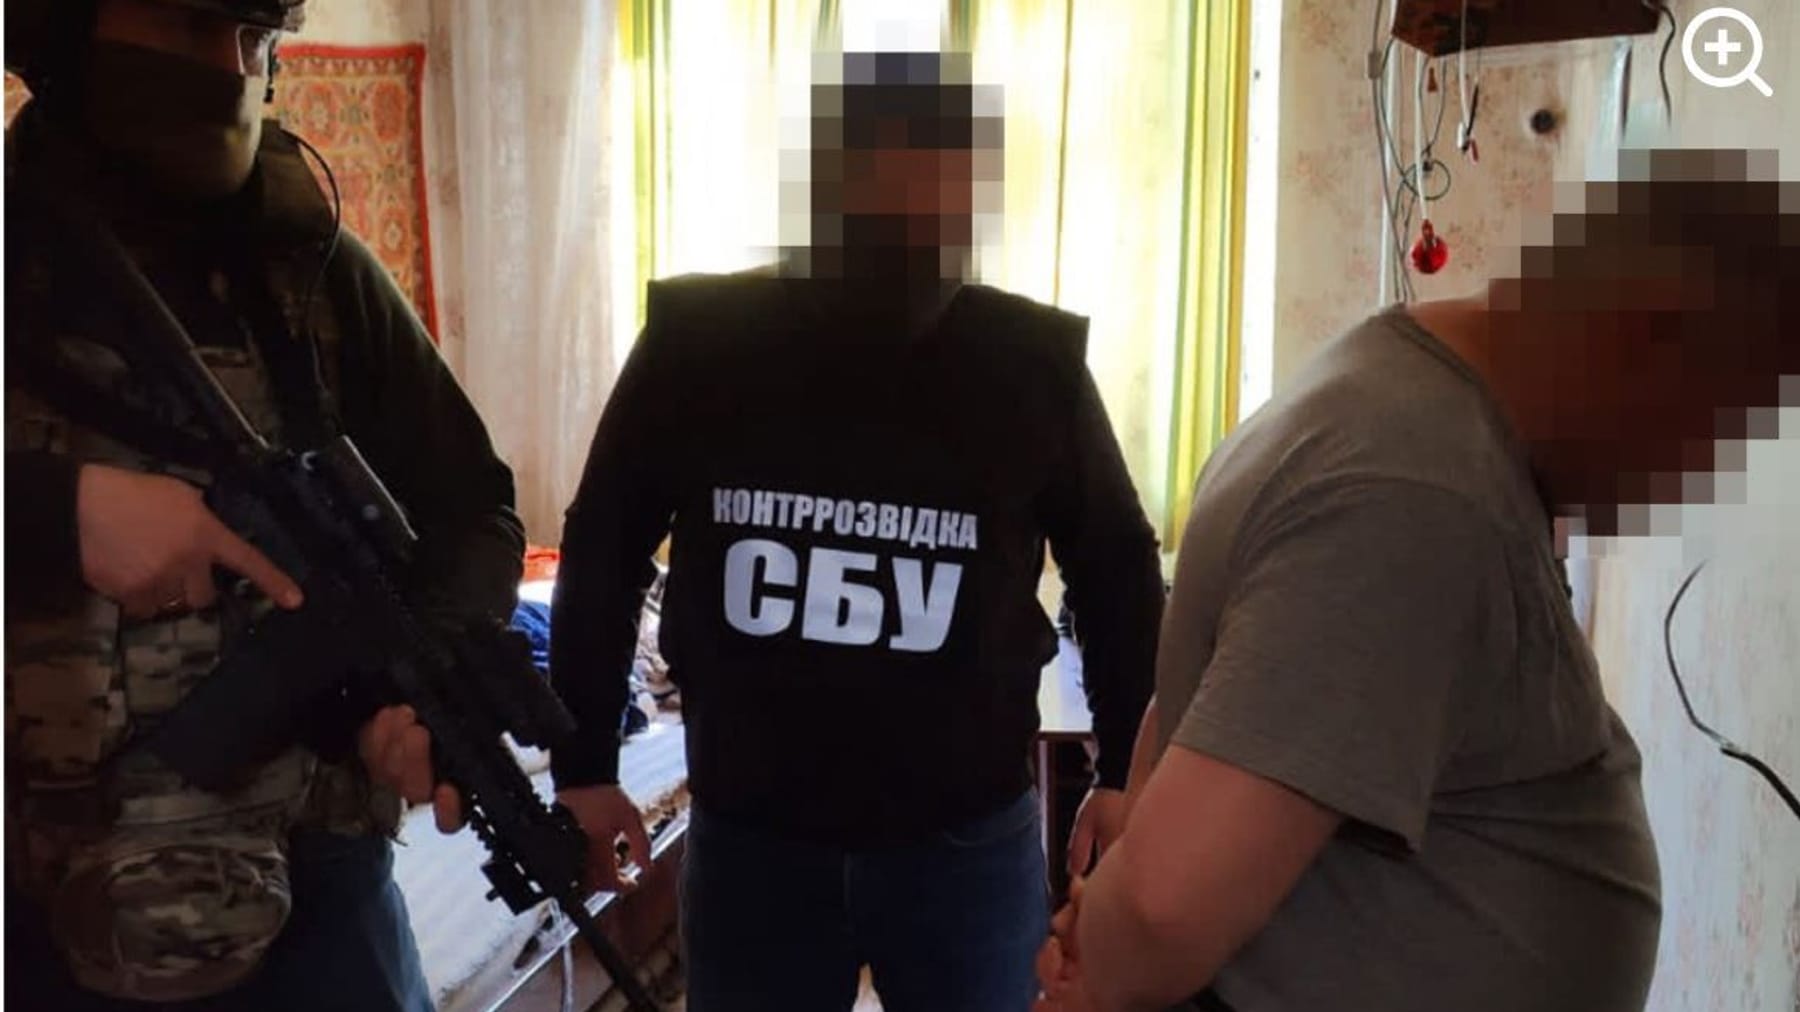 Ukrainer sprengen ein Netzwerk russischer Agenten – acht Spione in Haft